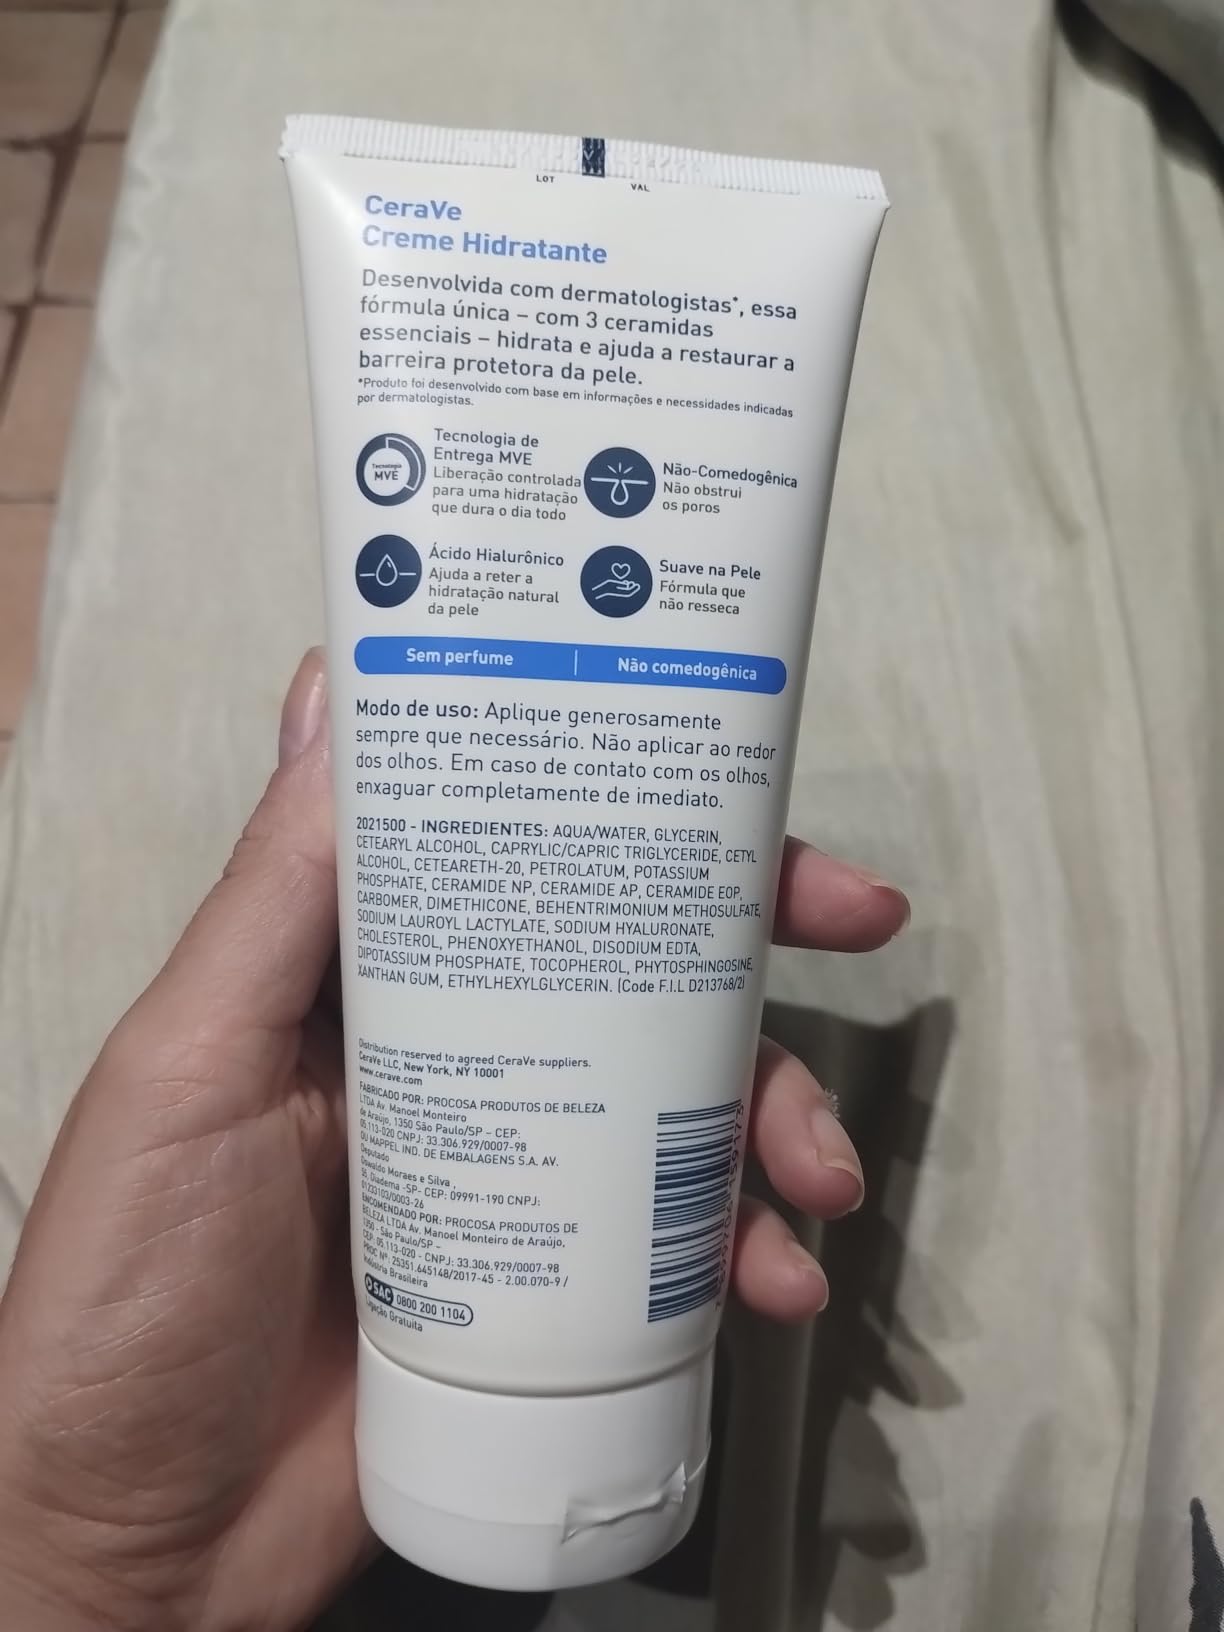 CeraVe Creme Hidratante com Ácido Hialurônico - Imagem do produto que o cliente comprou